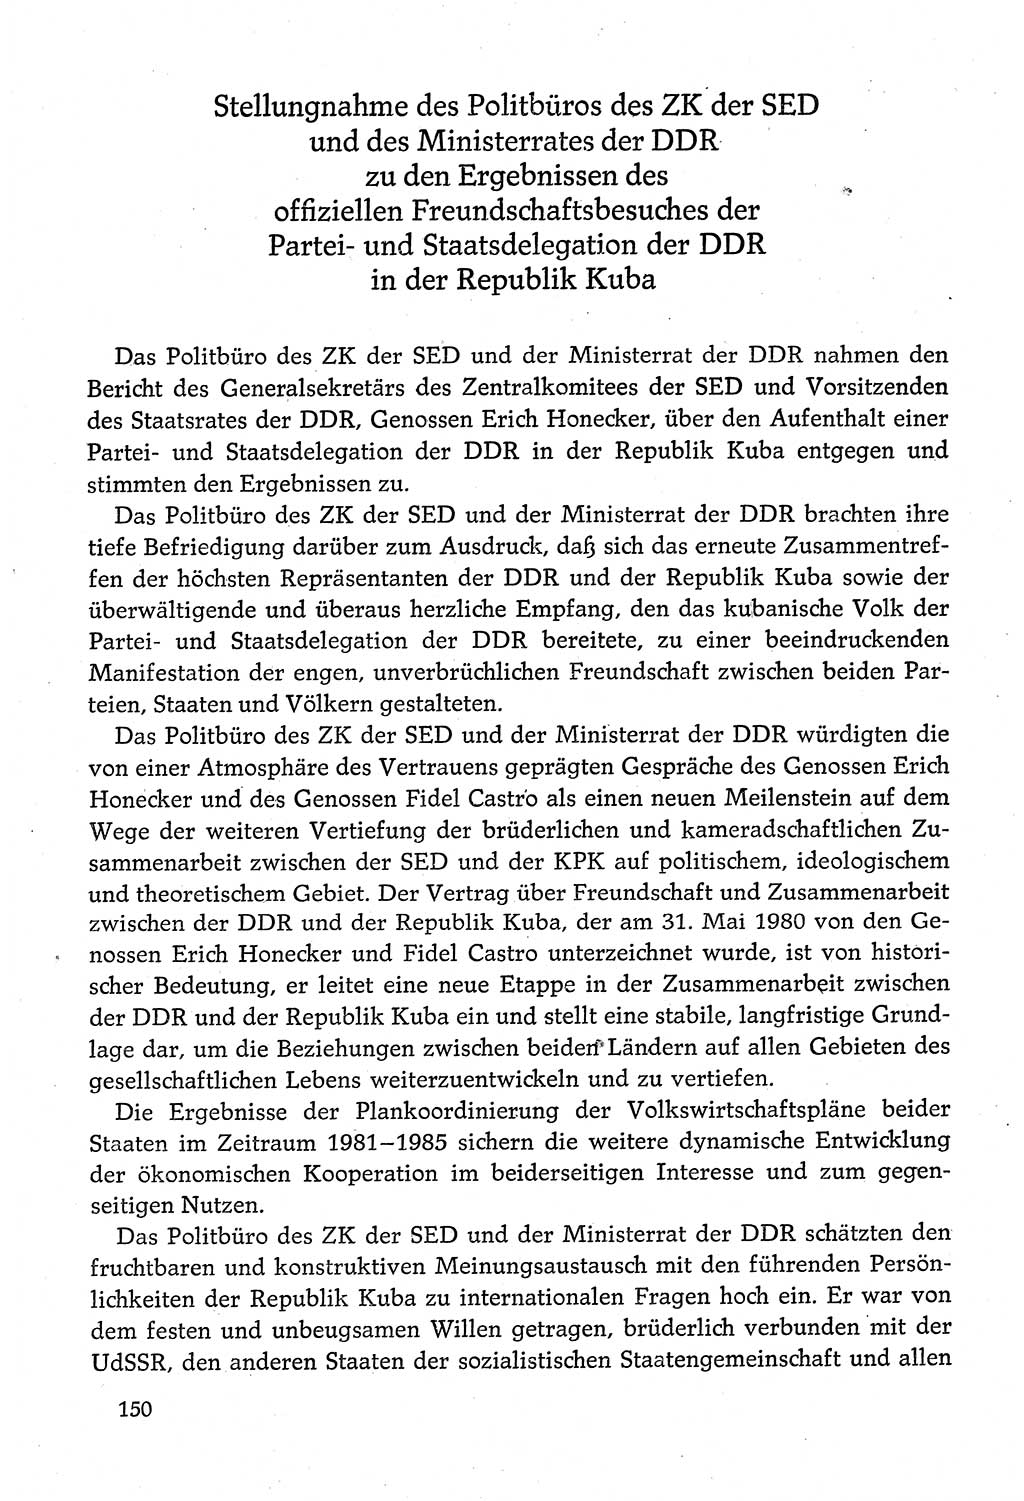 Dokumente der Sozialistischen Einheitspartei Deutschlands (SED) [Deutsche Demokratische Republik (DDR)] 1980-1981, Seite 150 (Dok. SED DDR 1980-1981, S. 150)